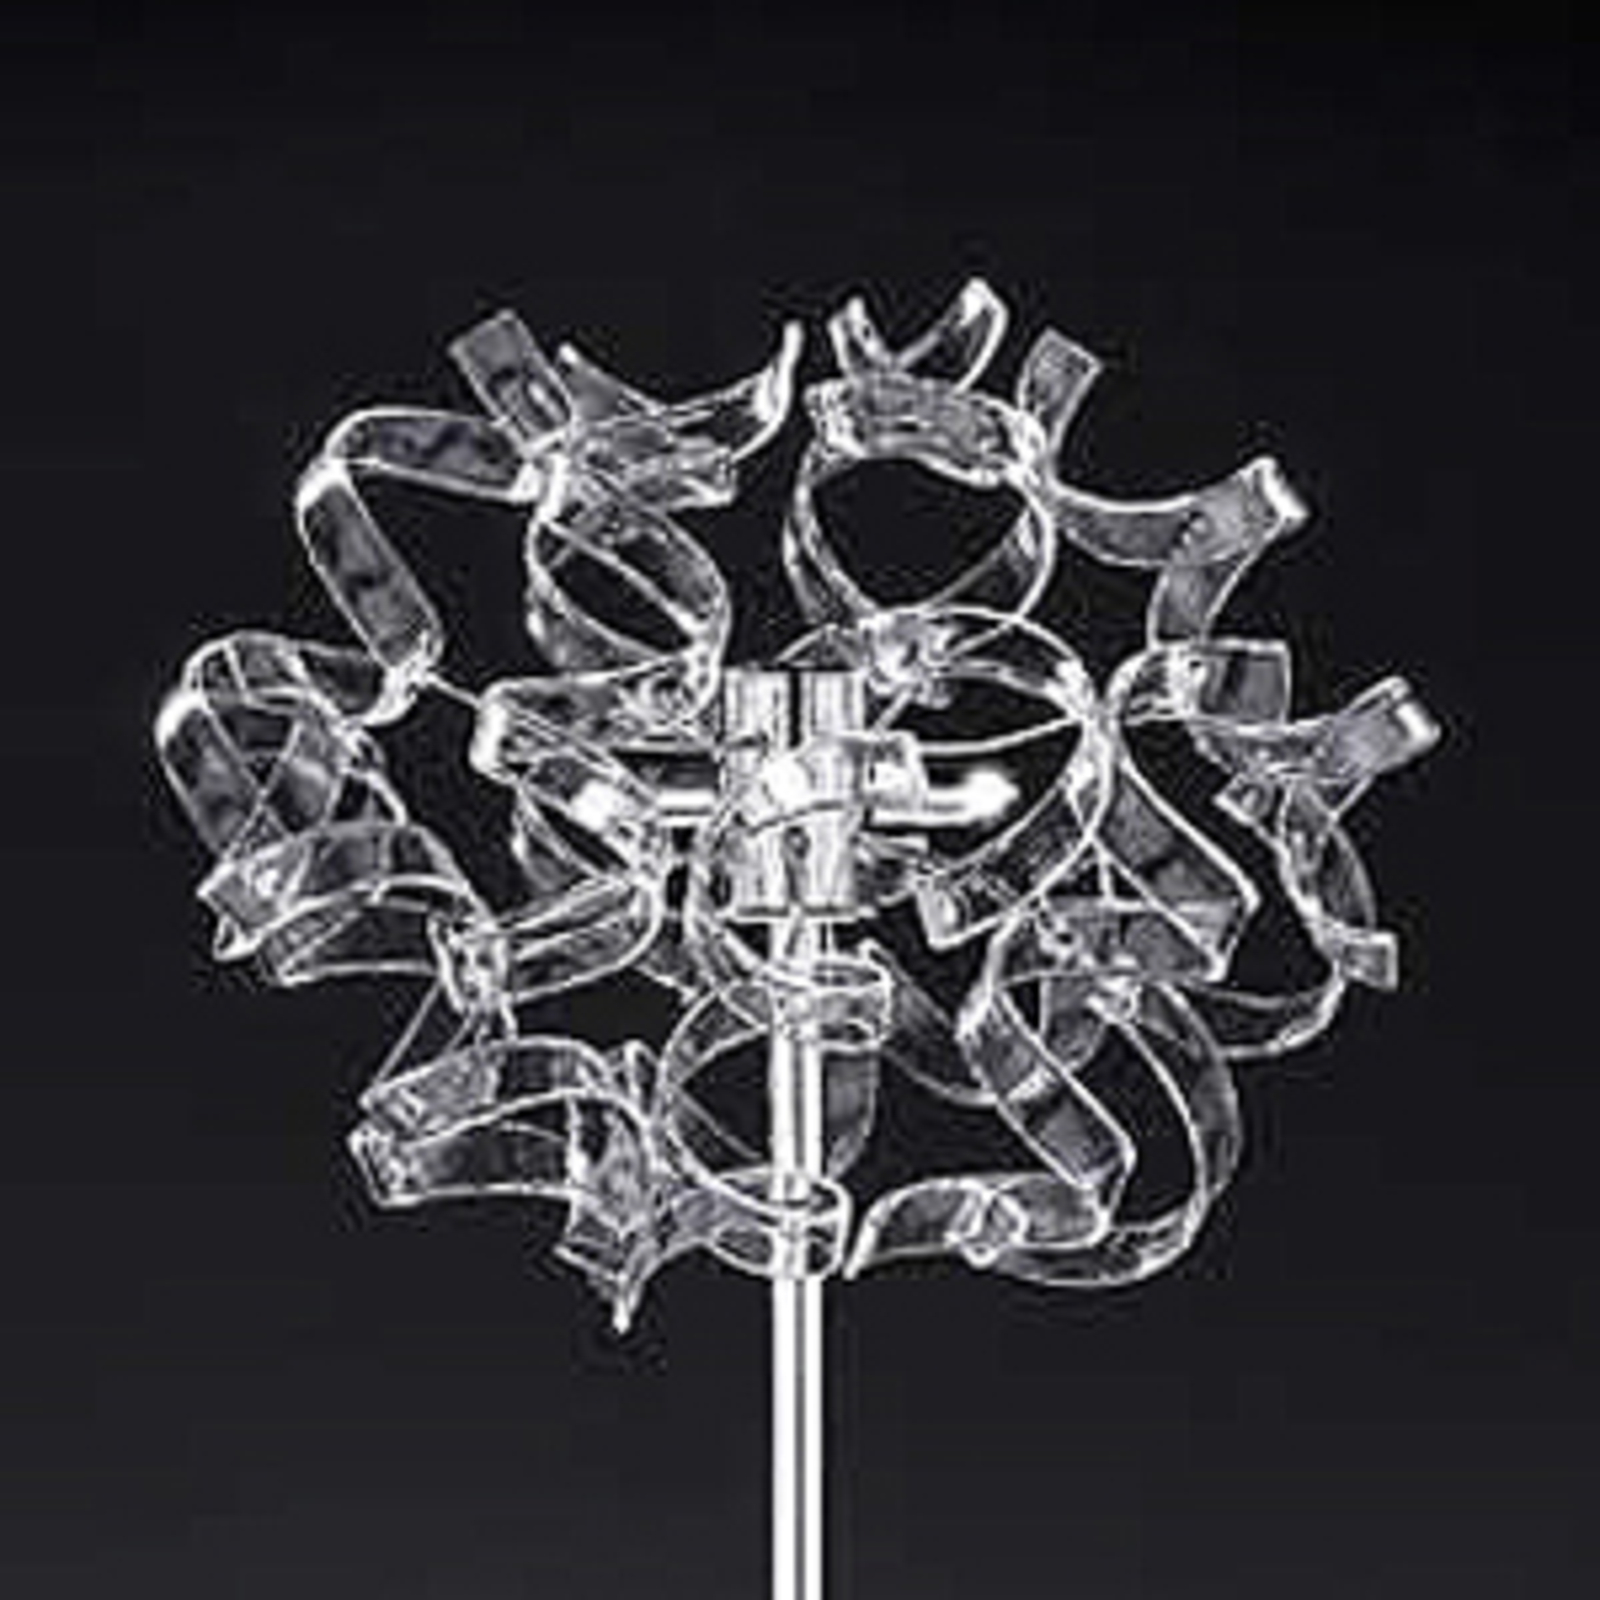 Crystal gulvlampe med udsmykket spids